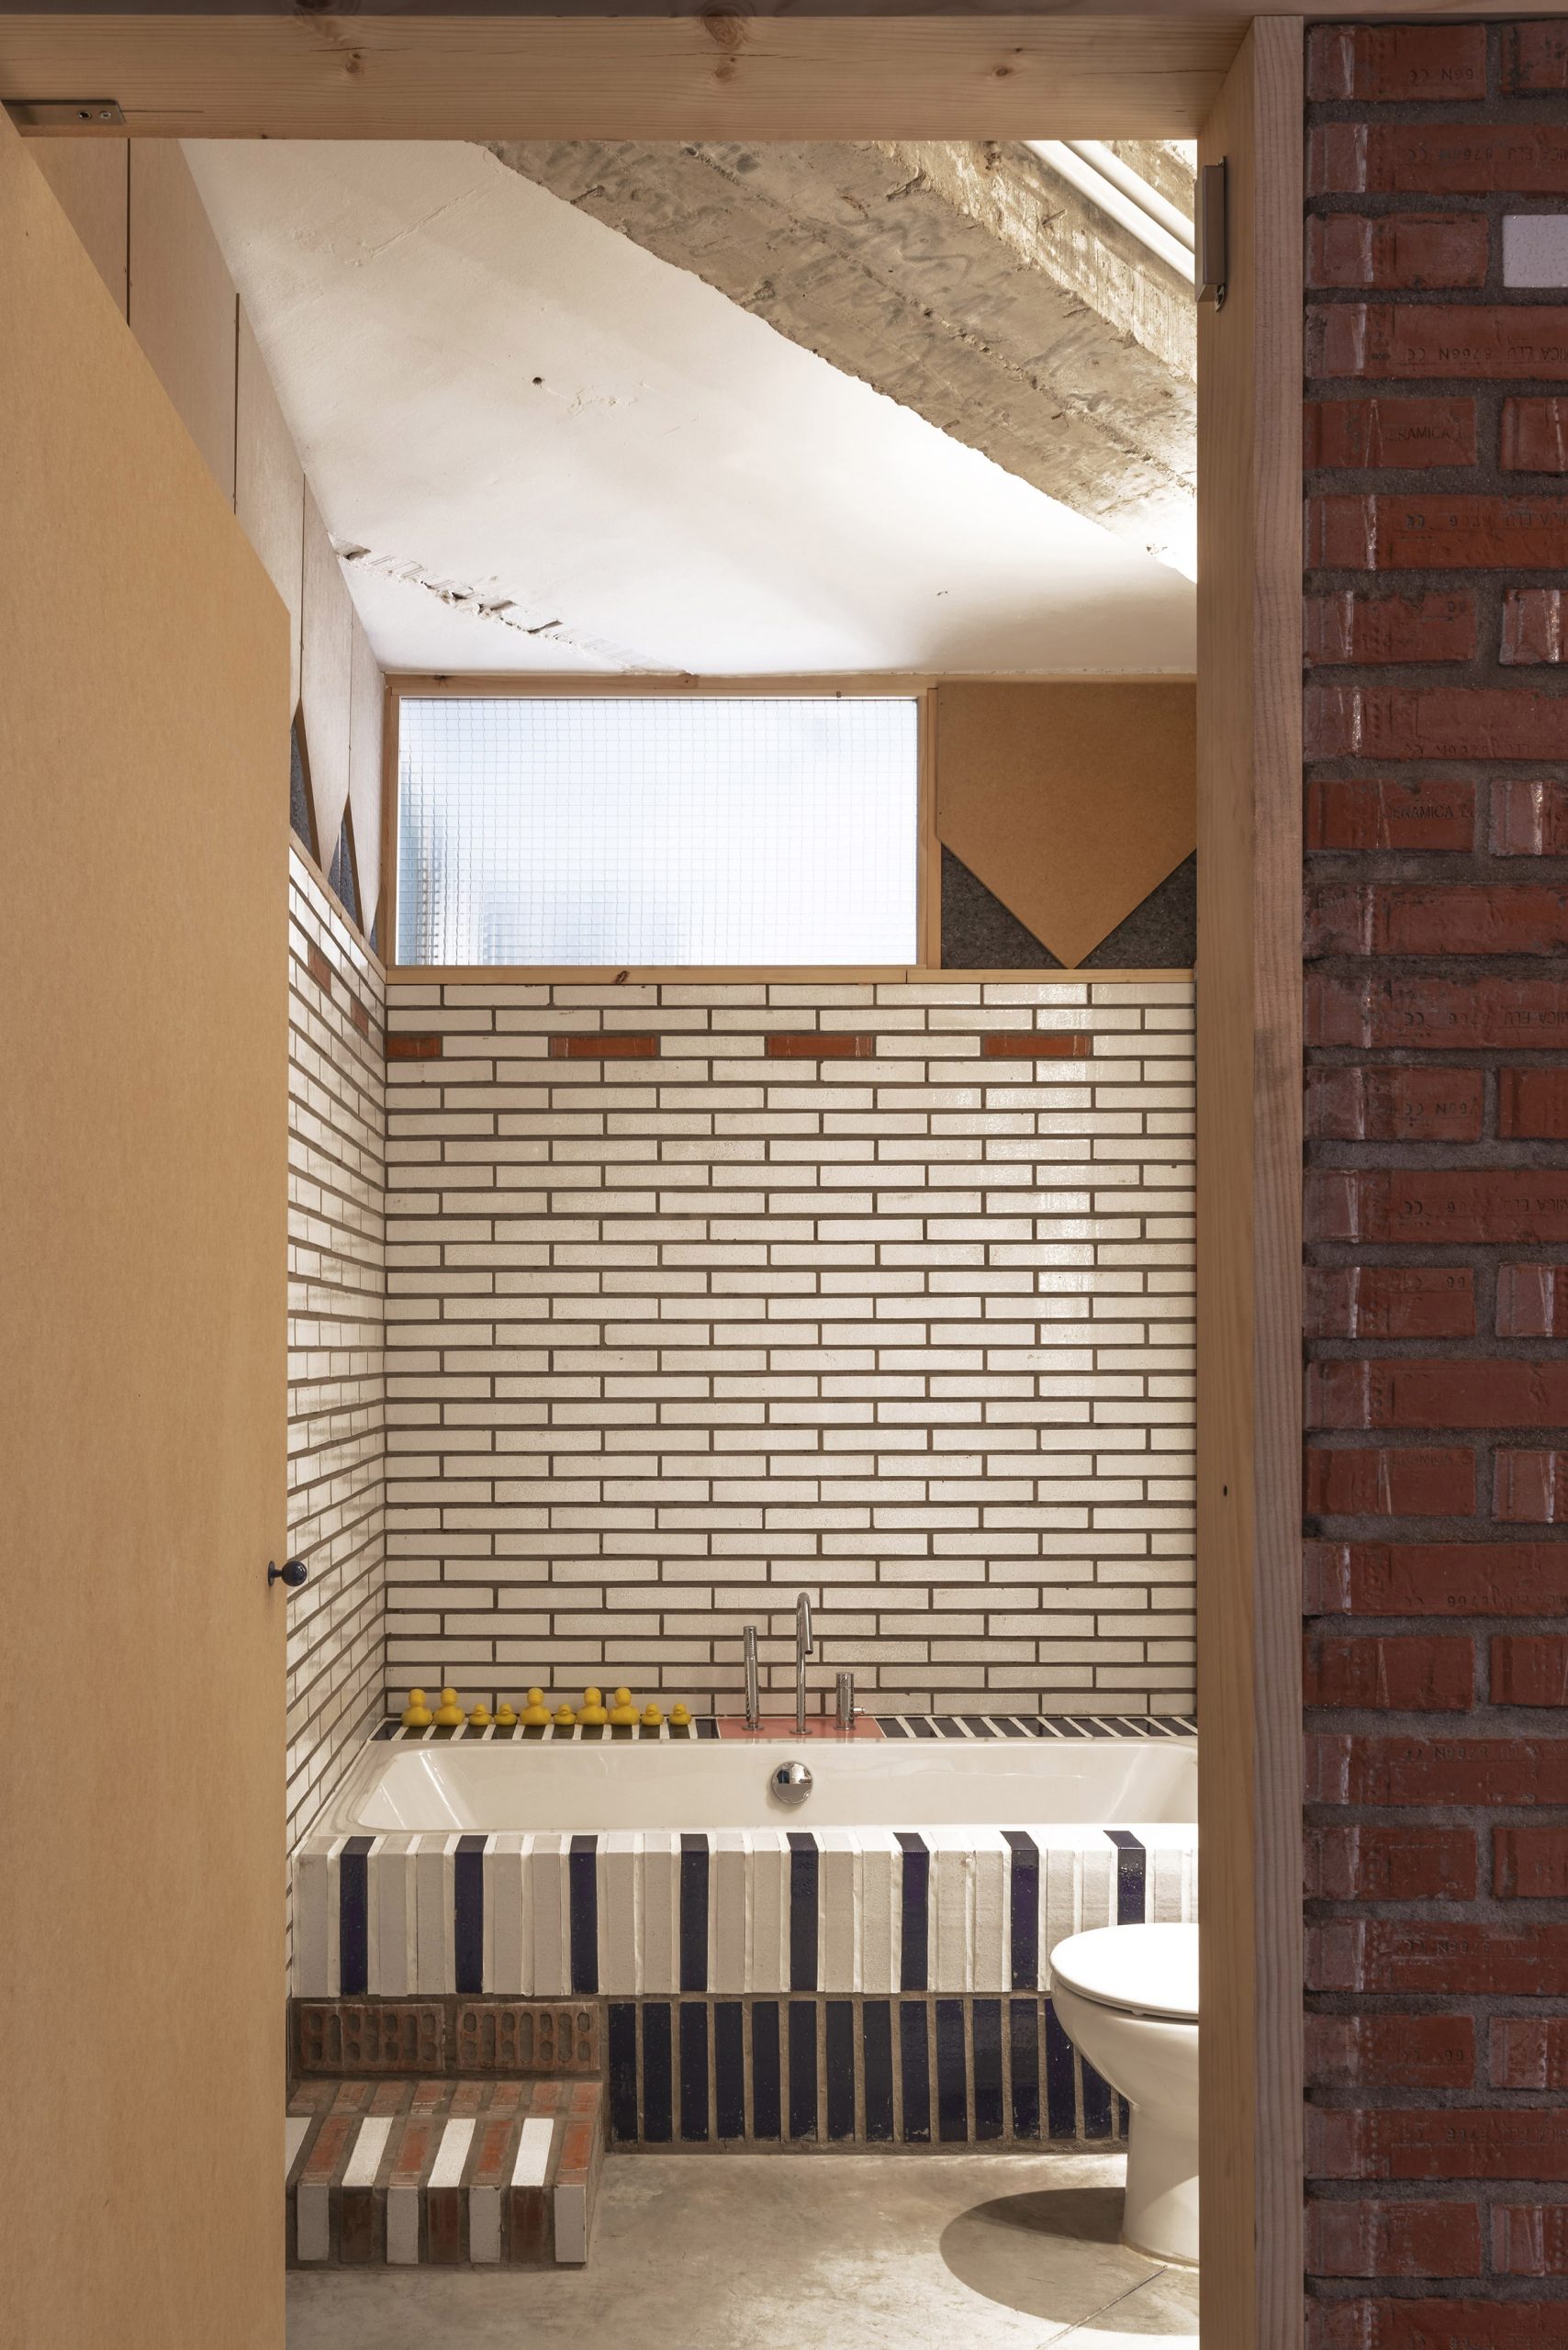 Bathroom of La Nave apartment in Madrid by Nomos